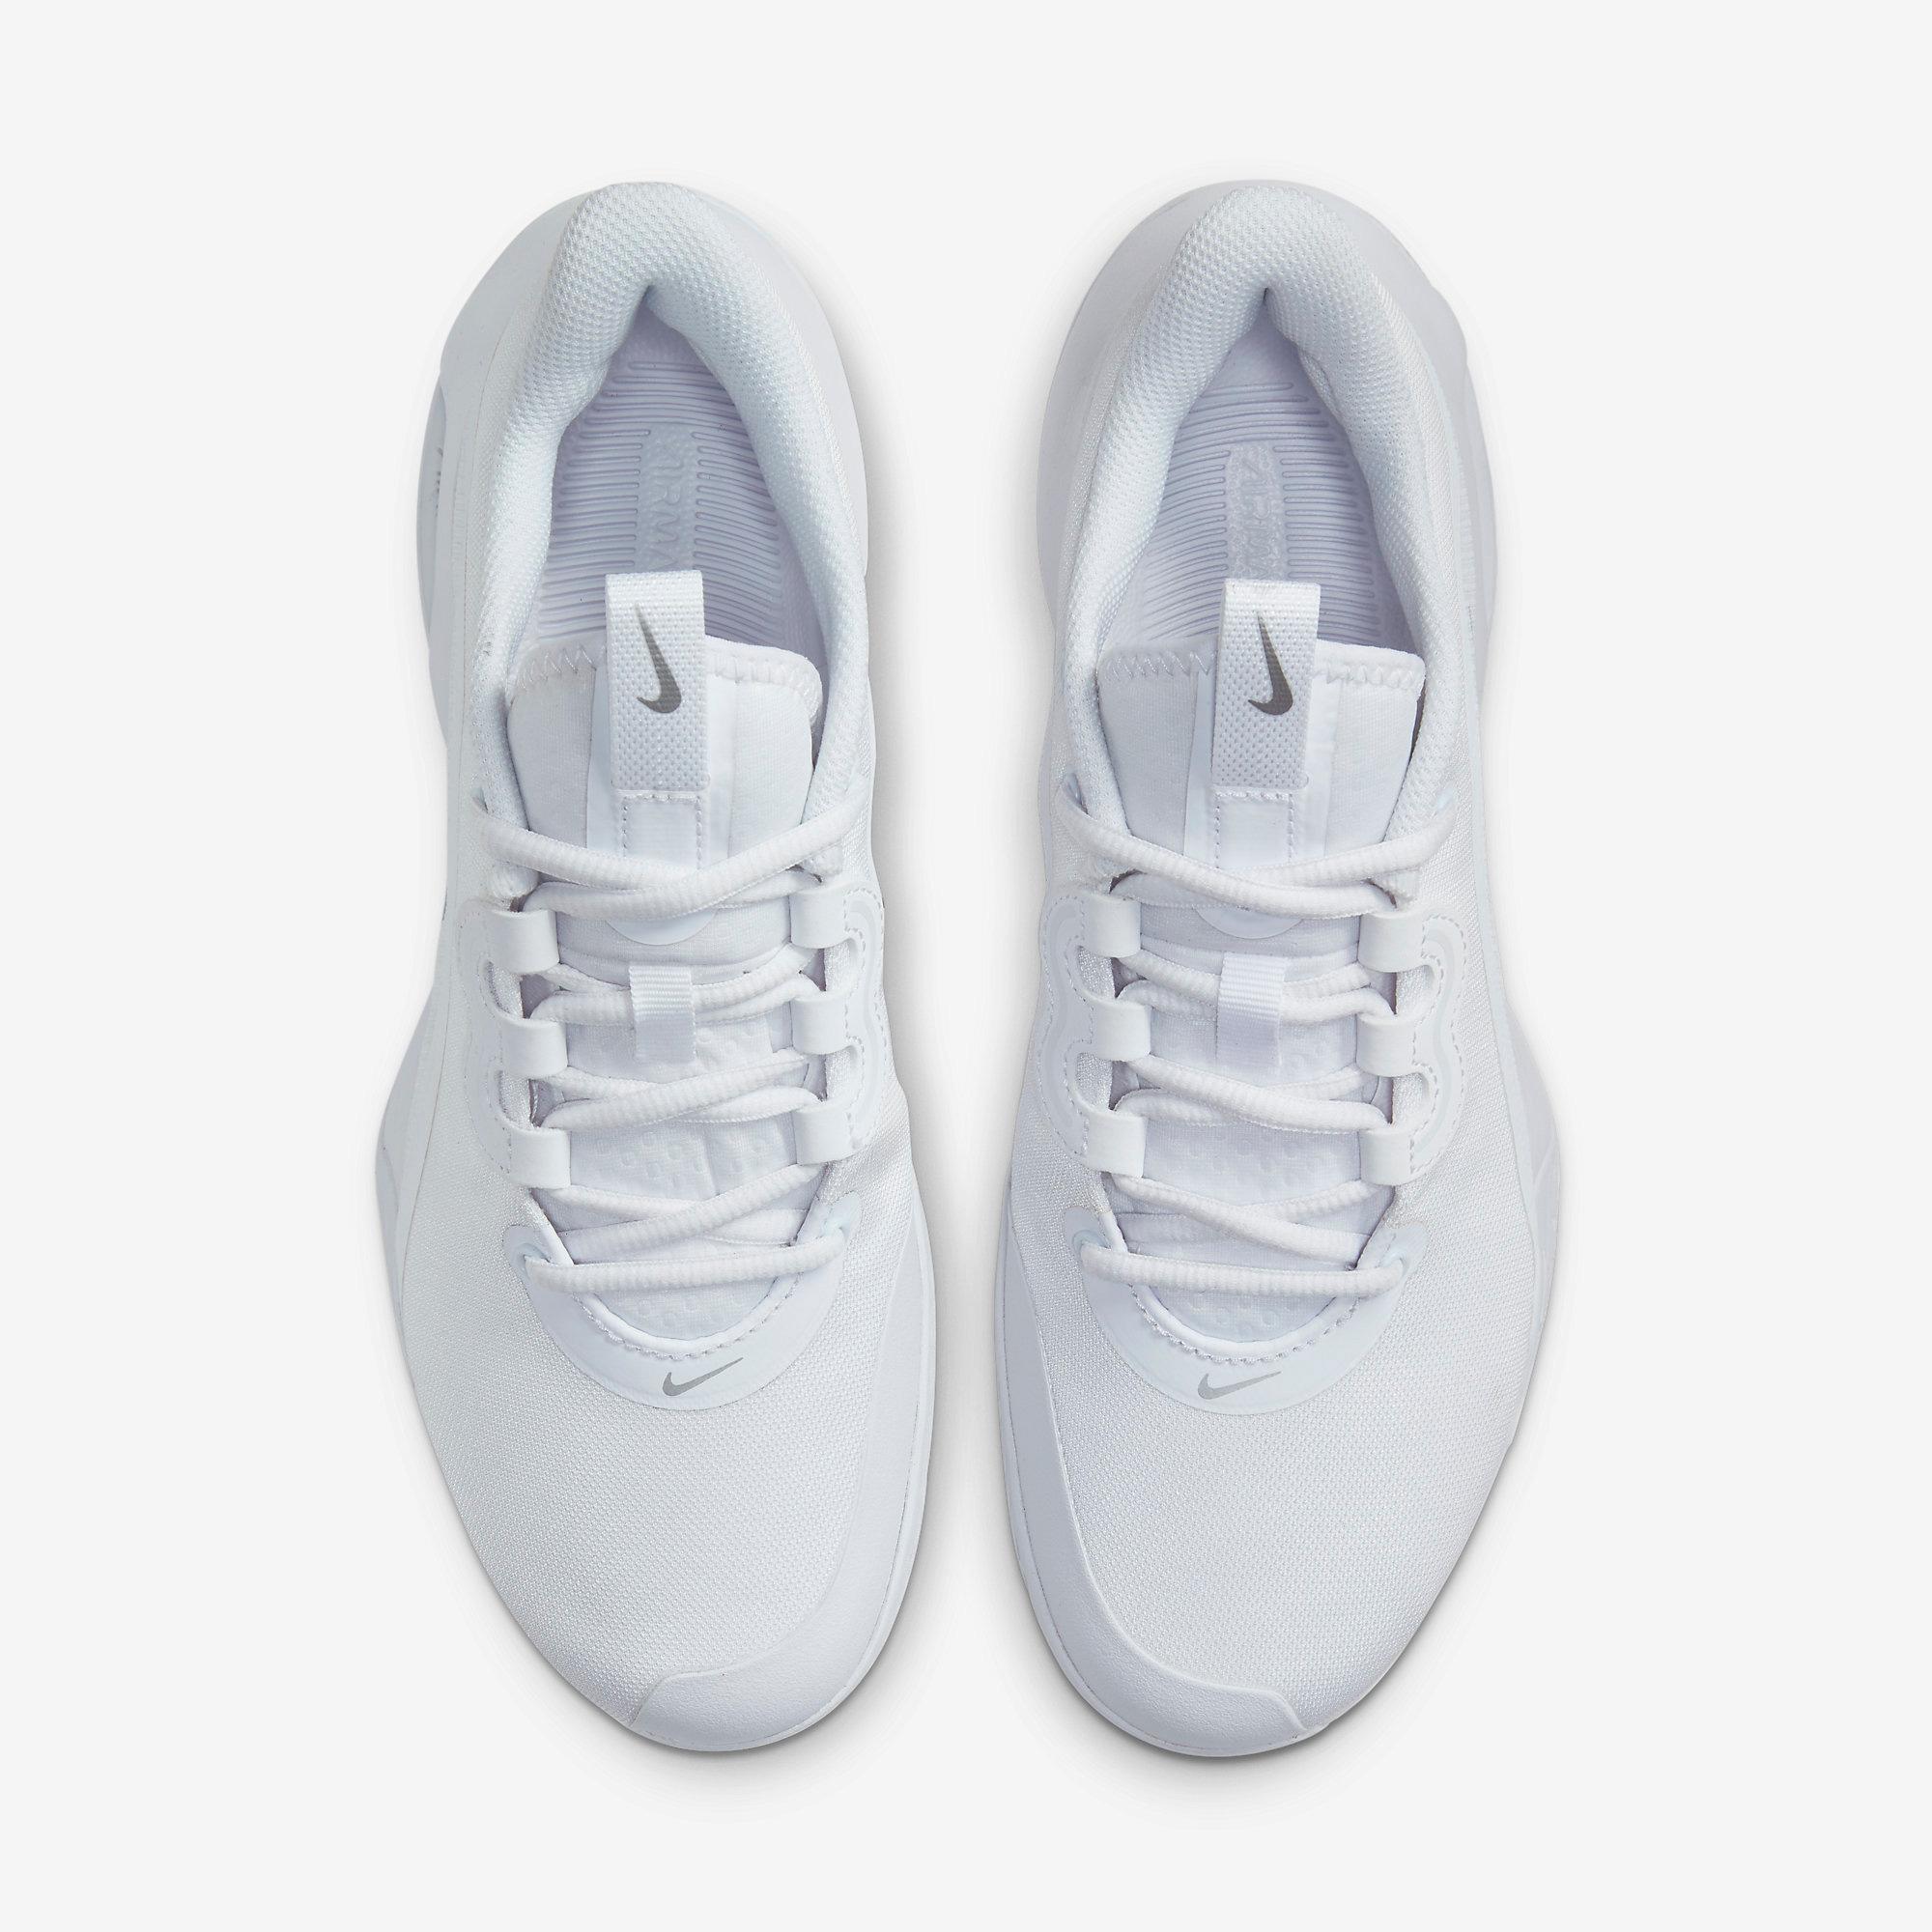 Nike Womens Air Max Volley Tennis Shoes - White - Tennisnuts.com